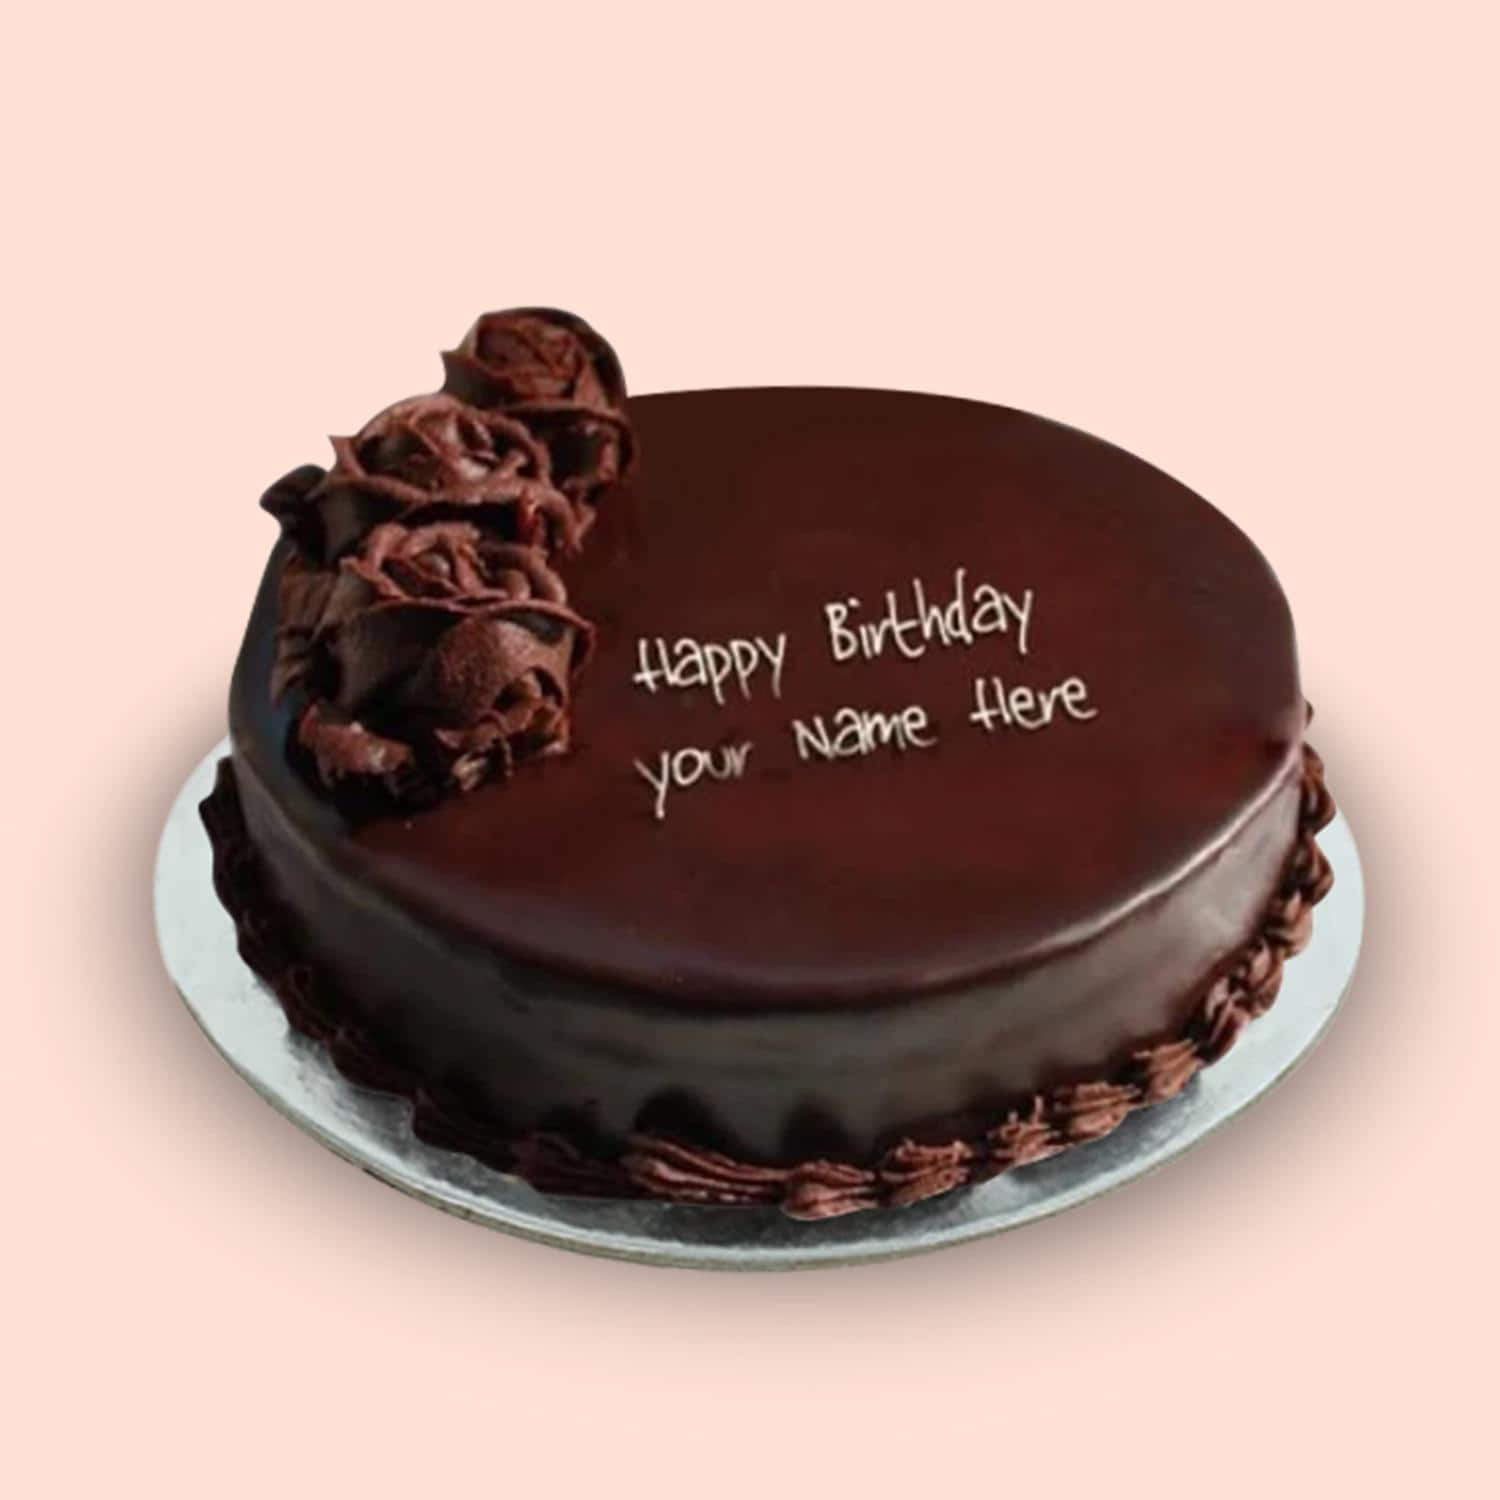 Whatsapp Status Birthday Cakes - Happy Birthday Cakes Whatsapp Status Video  | Happy birthday cake images, Happy birthday cake pictures, Happy birthday  wallpaper